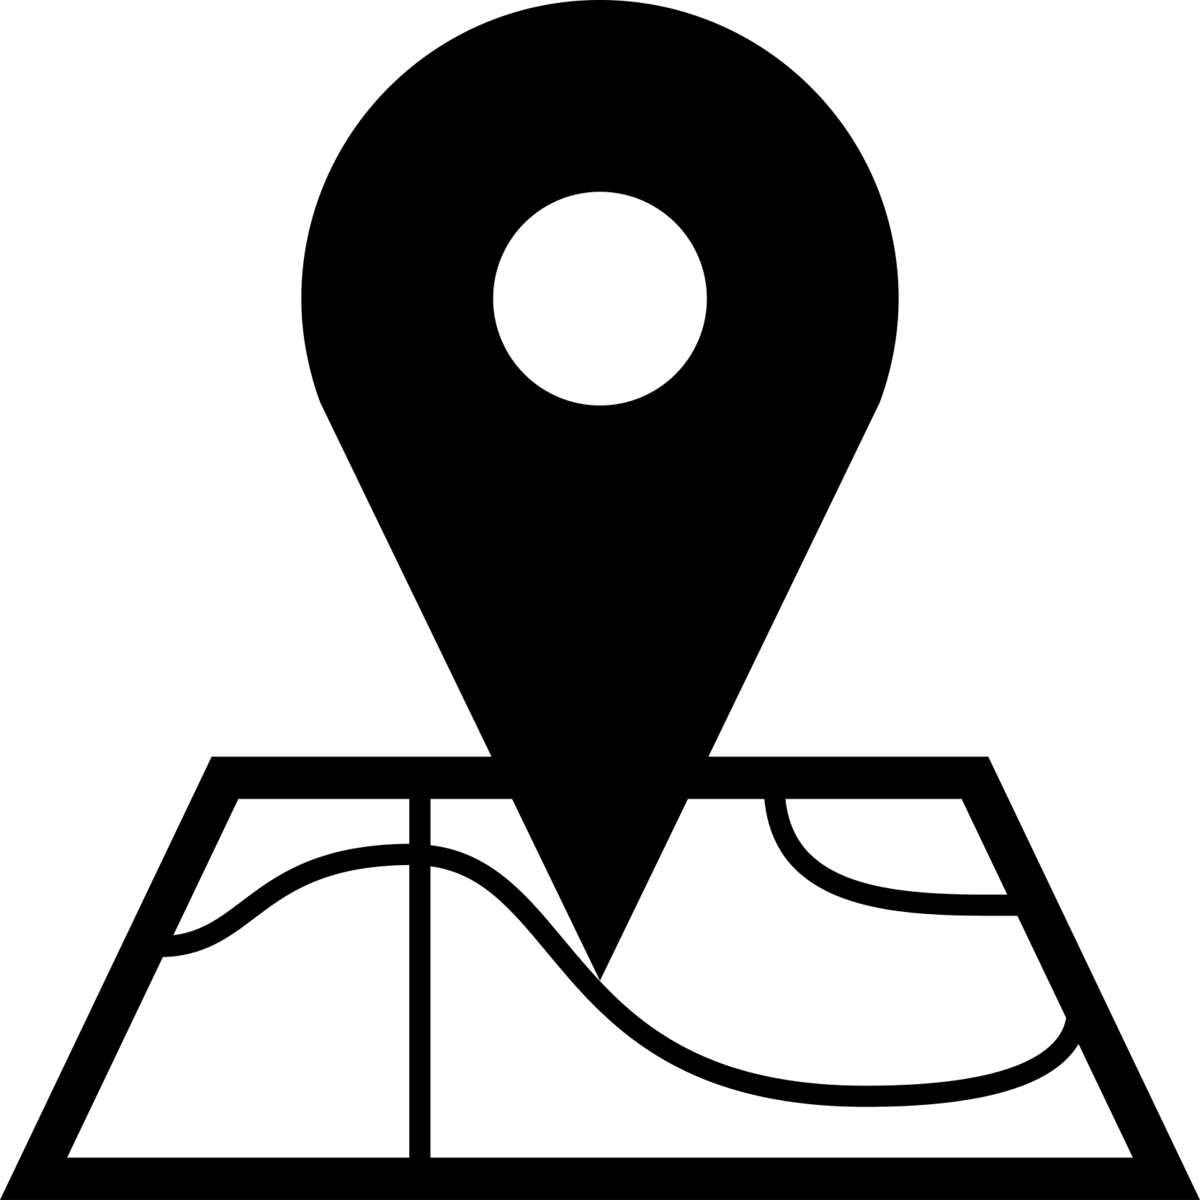 logo lokasi hitam putih